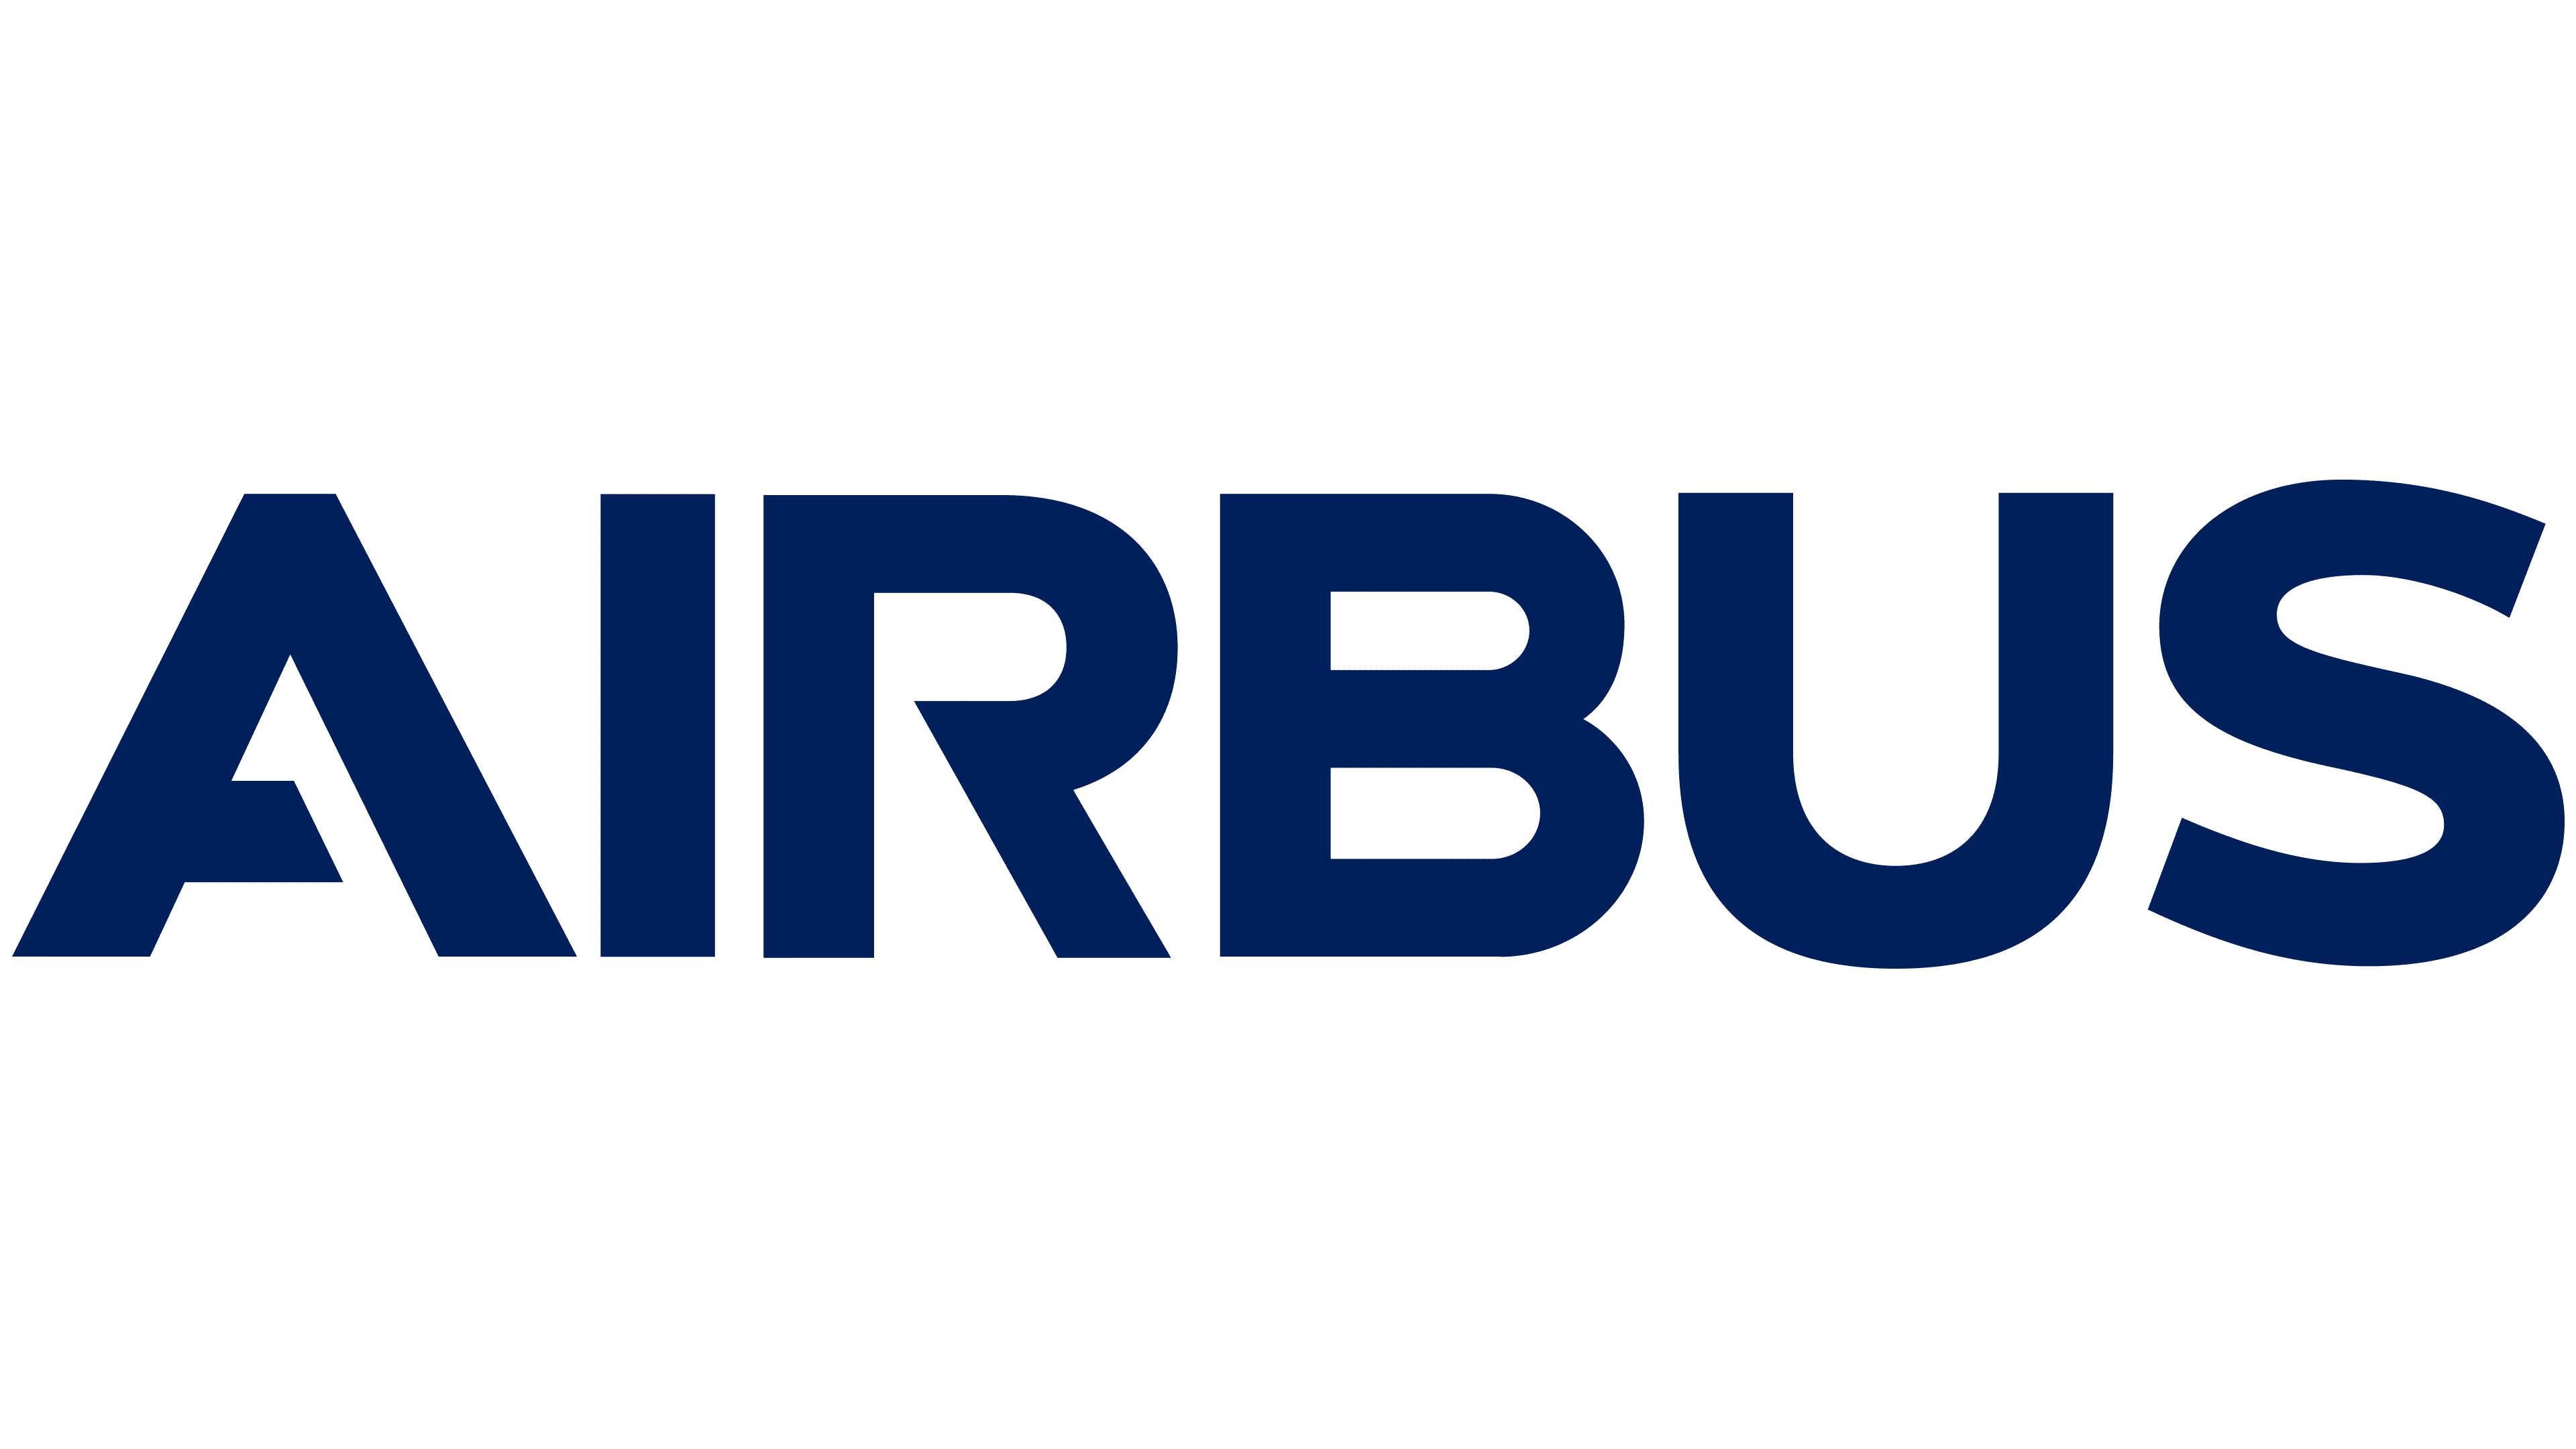 Airbus-Logo